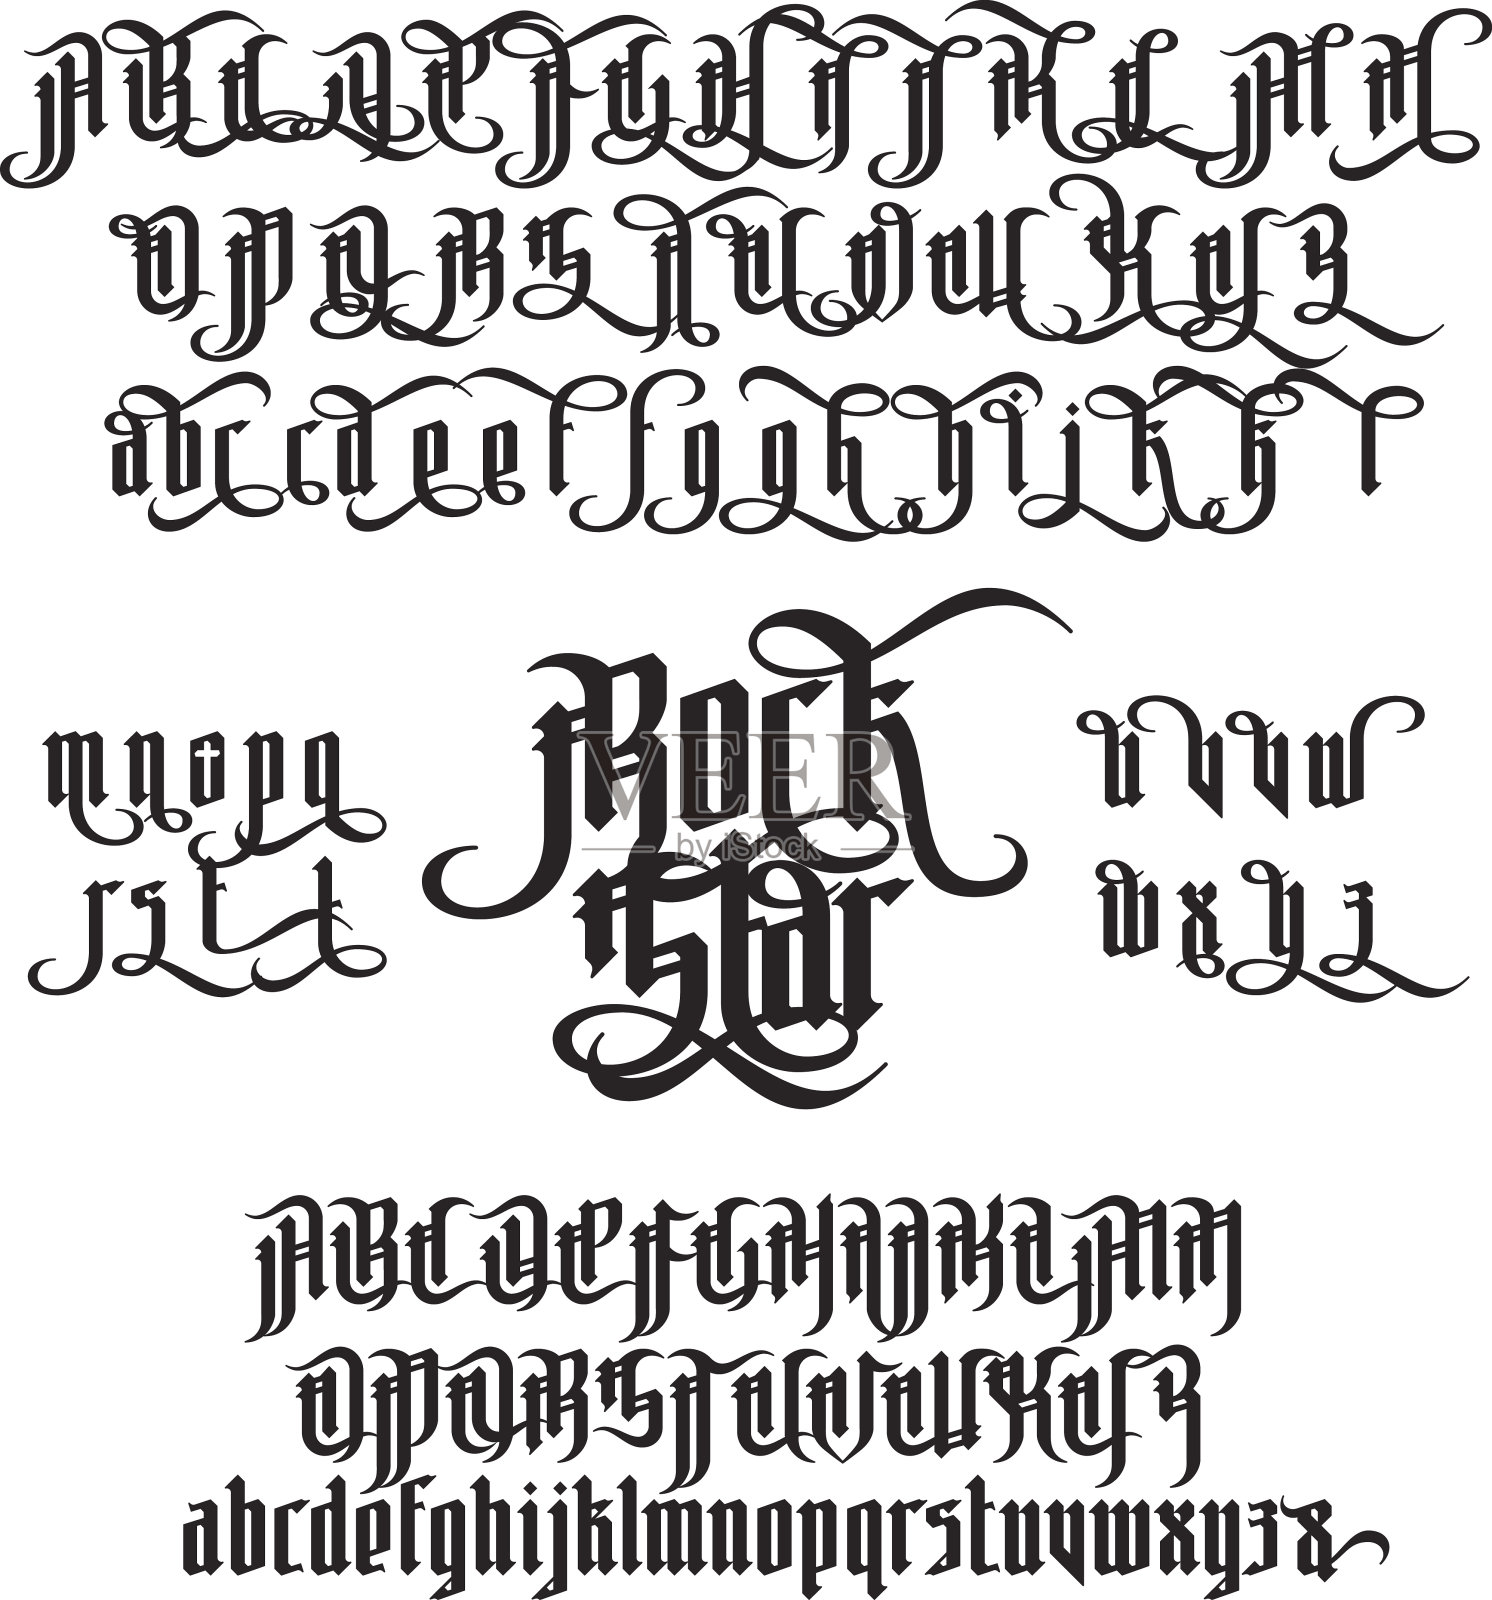 摇滚明星哥特字体设计元素图片